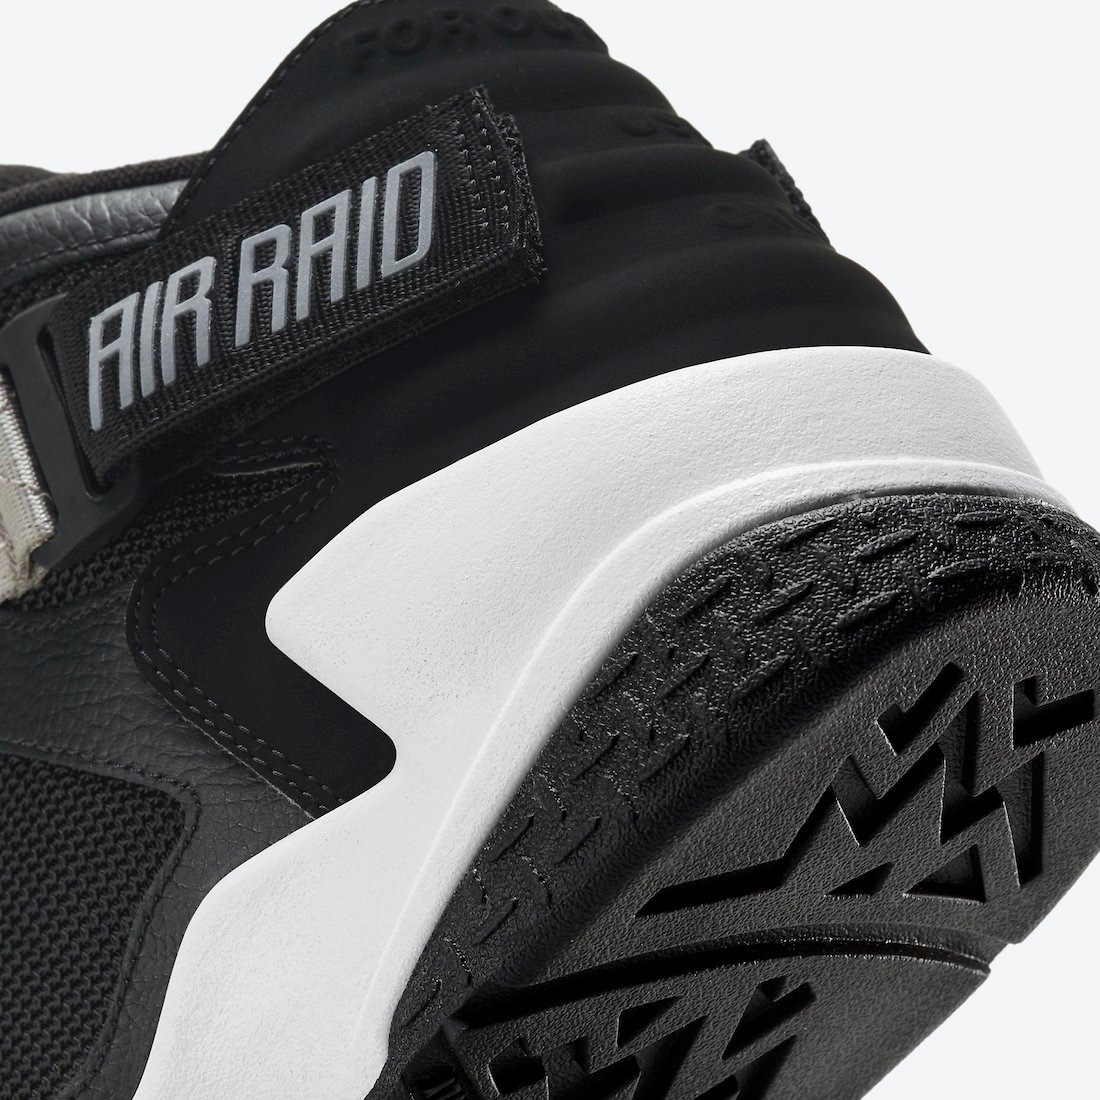 Nike Air Raid OG Black Grey DC1412-001 Release Date Info